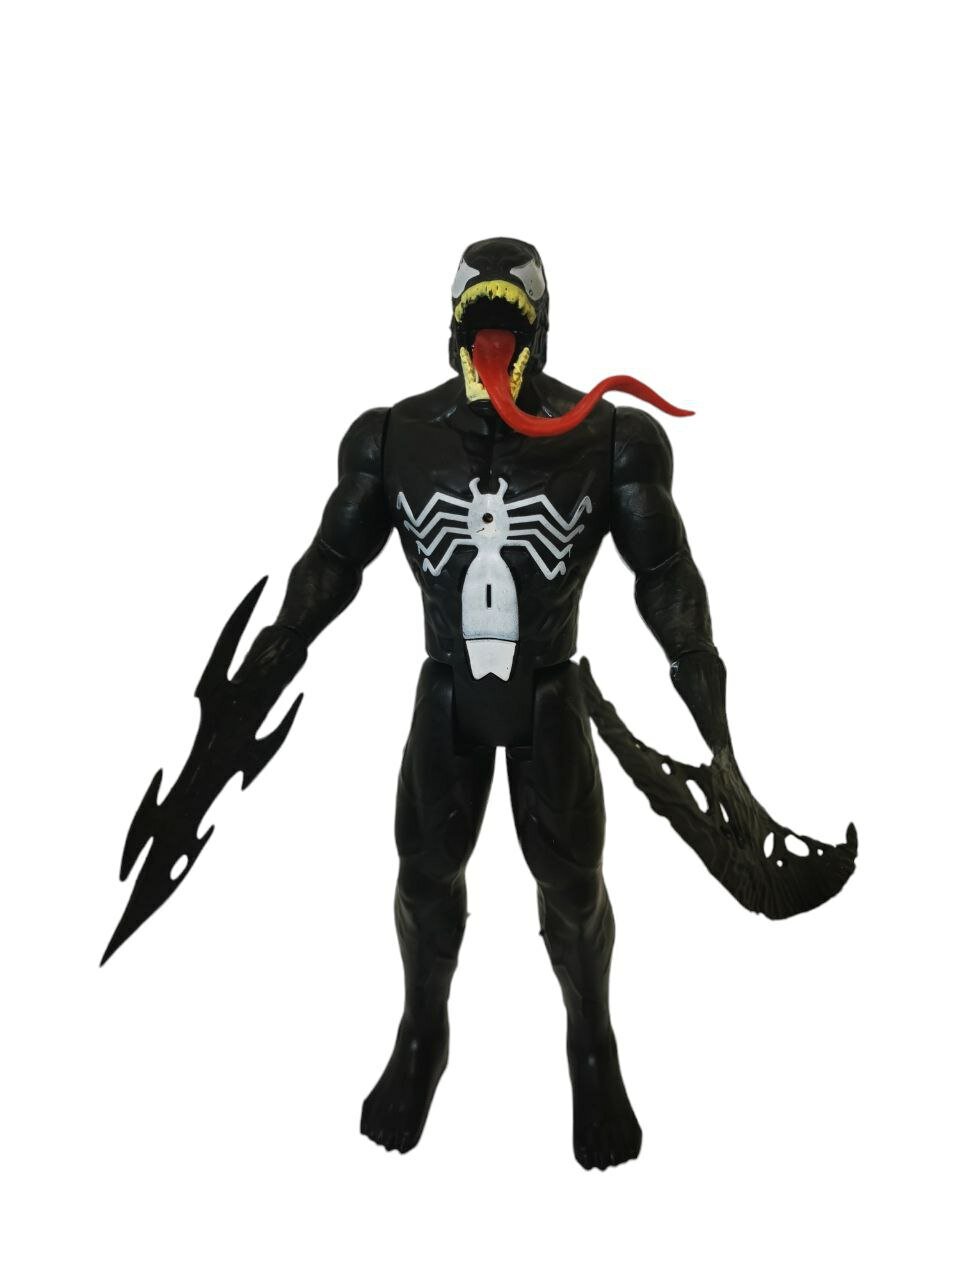 Фигурка Супергерои Веном 30 см / Venom / Фигурка Веном / MARVEL / Подсветка и Звуковое сопровождение 30см.